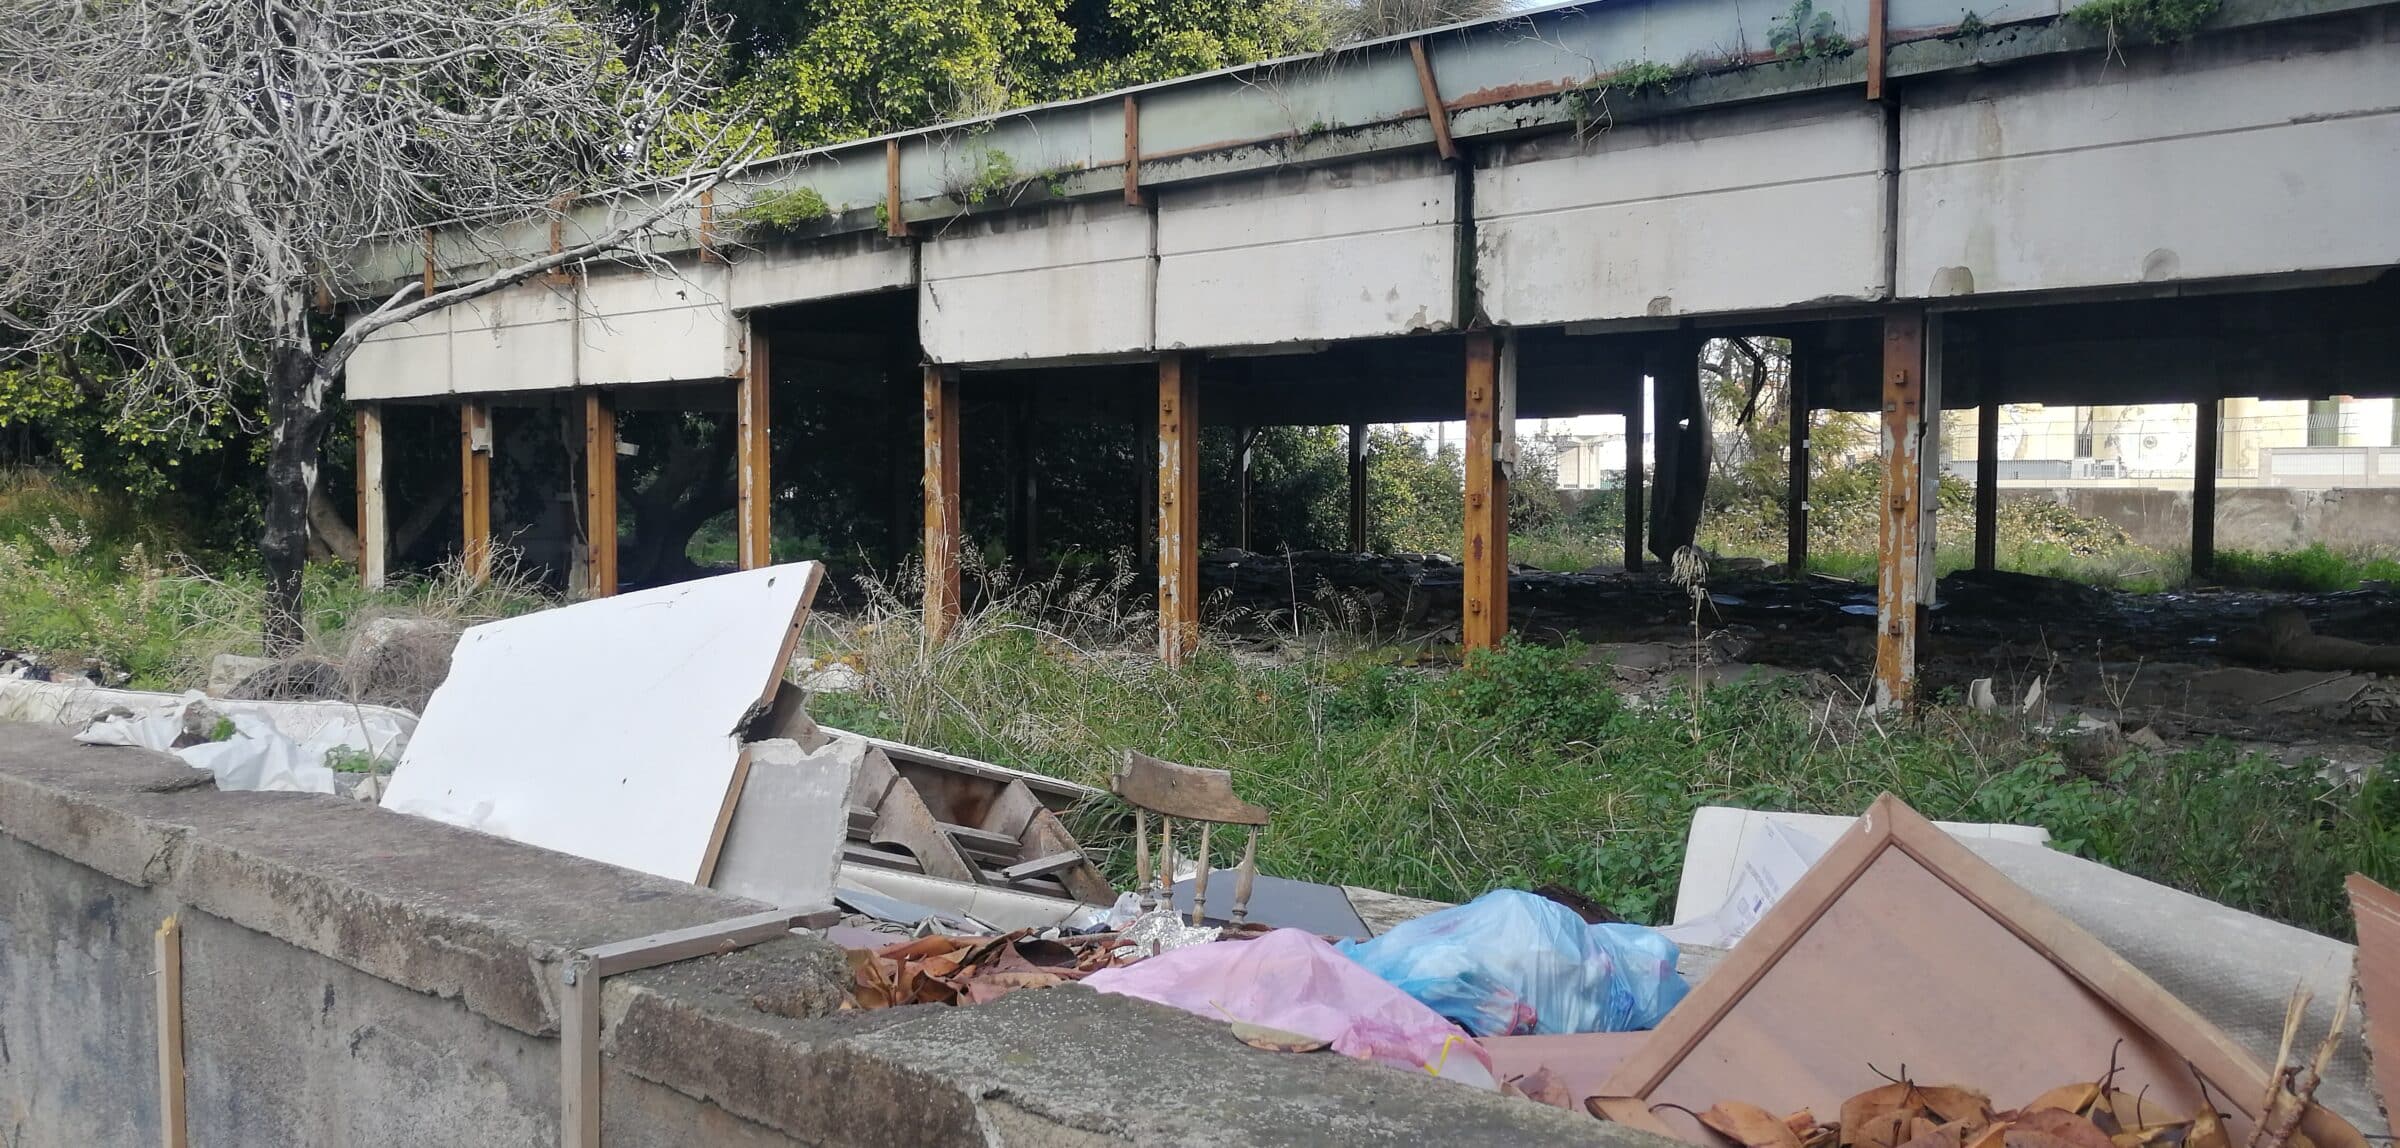 Ex asilo di via Toledo diventato bomba ecologica di rifiuti: il piano per risollevare l’area